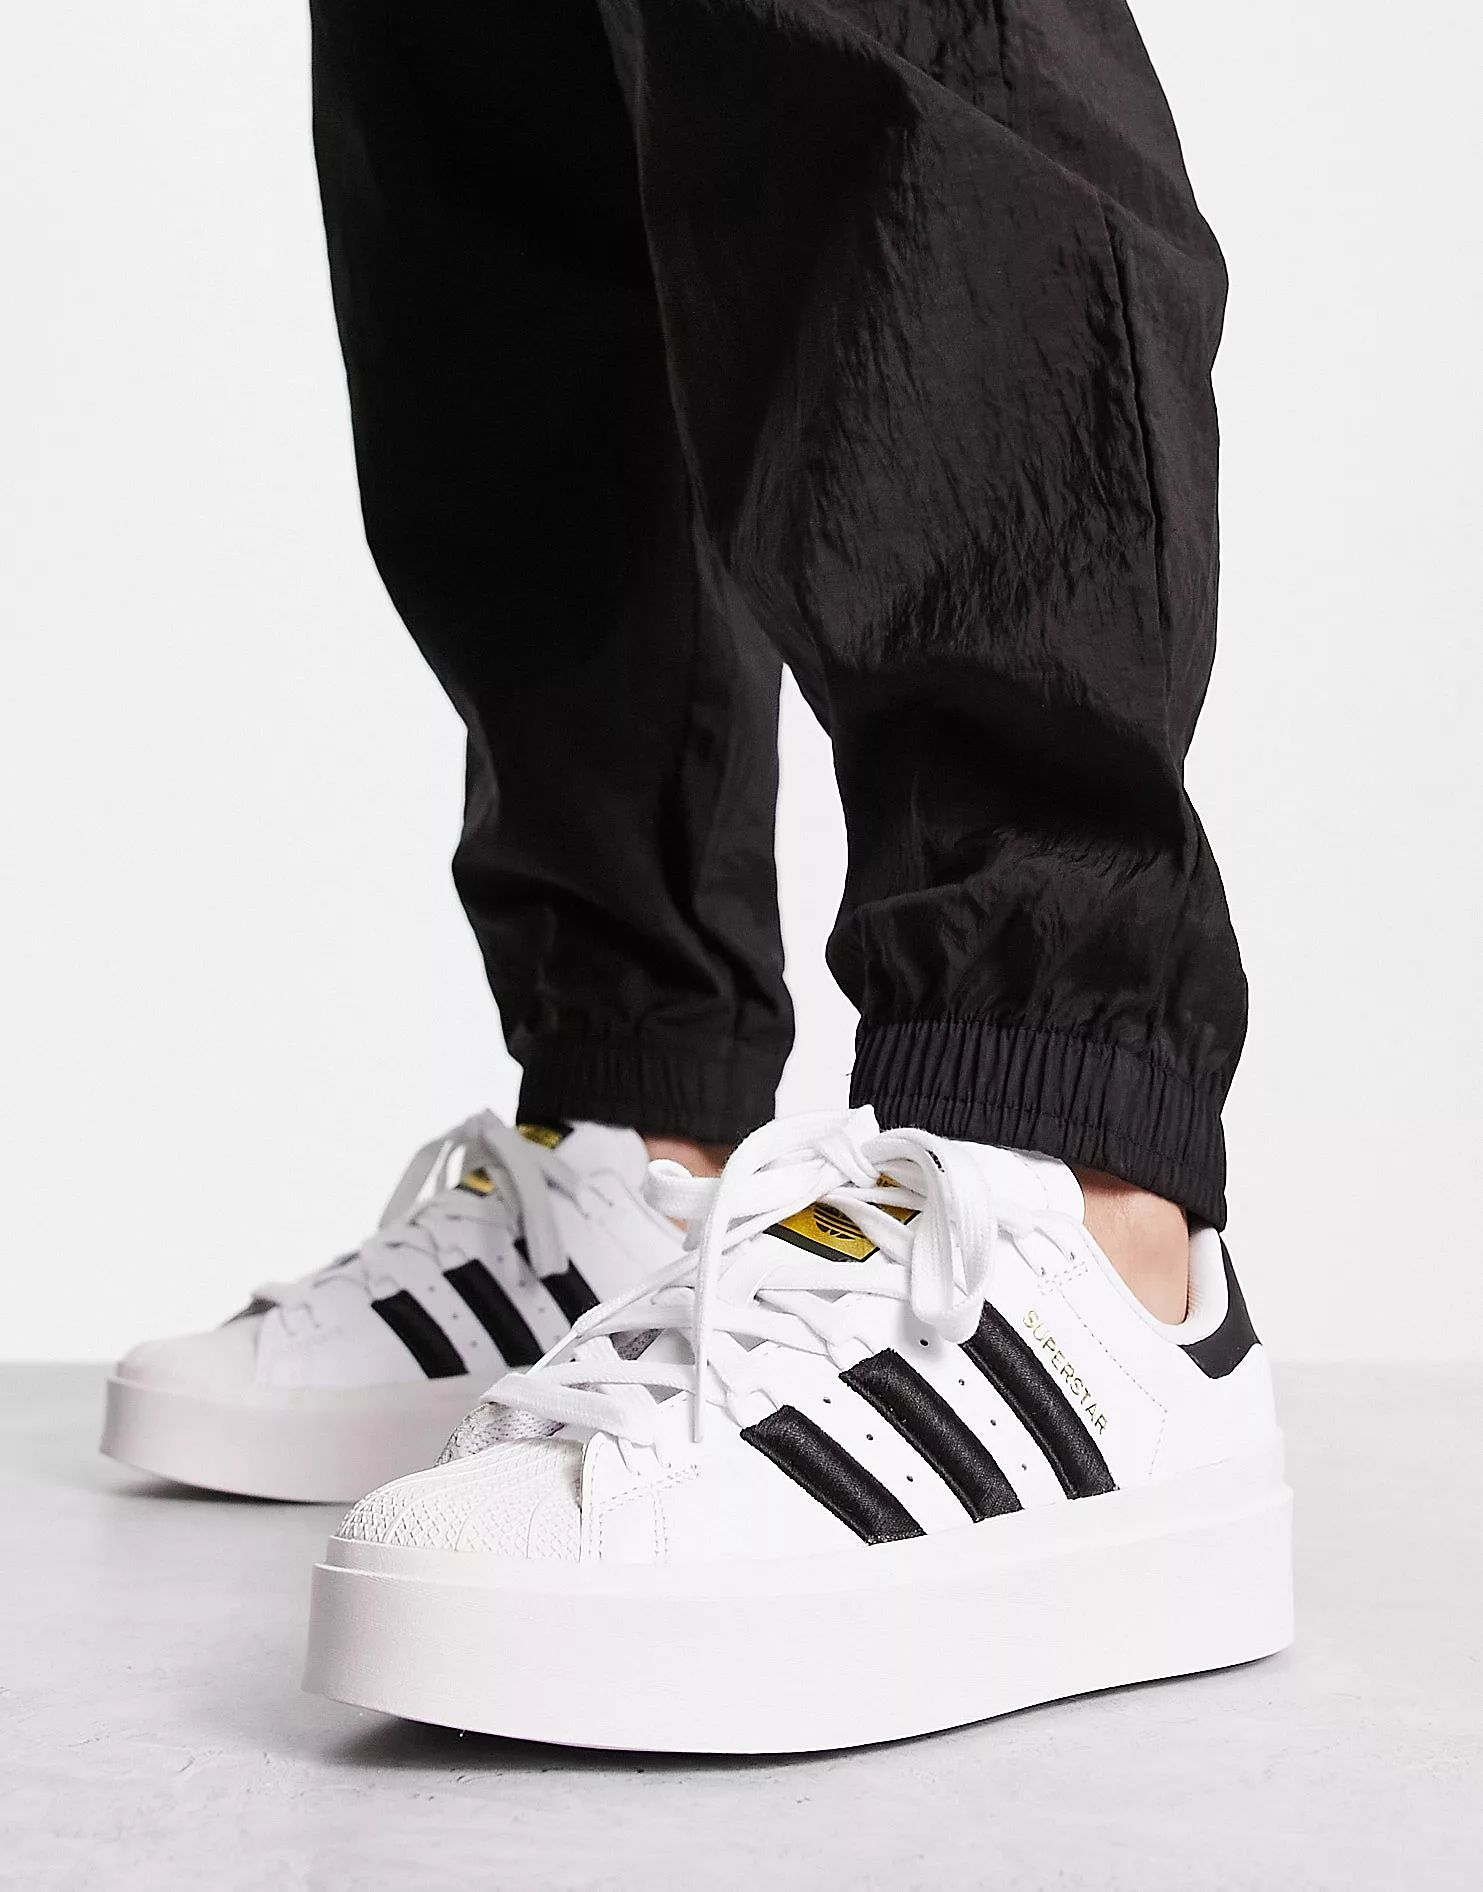 adidas Originals Superstar Bonega platform sneakers in white and black | ASOS (Global)